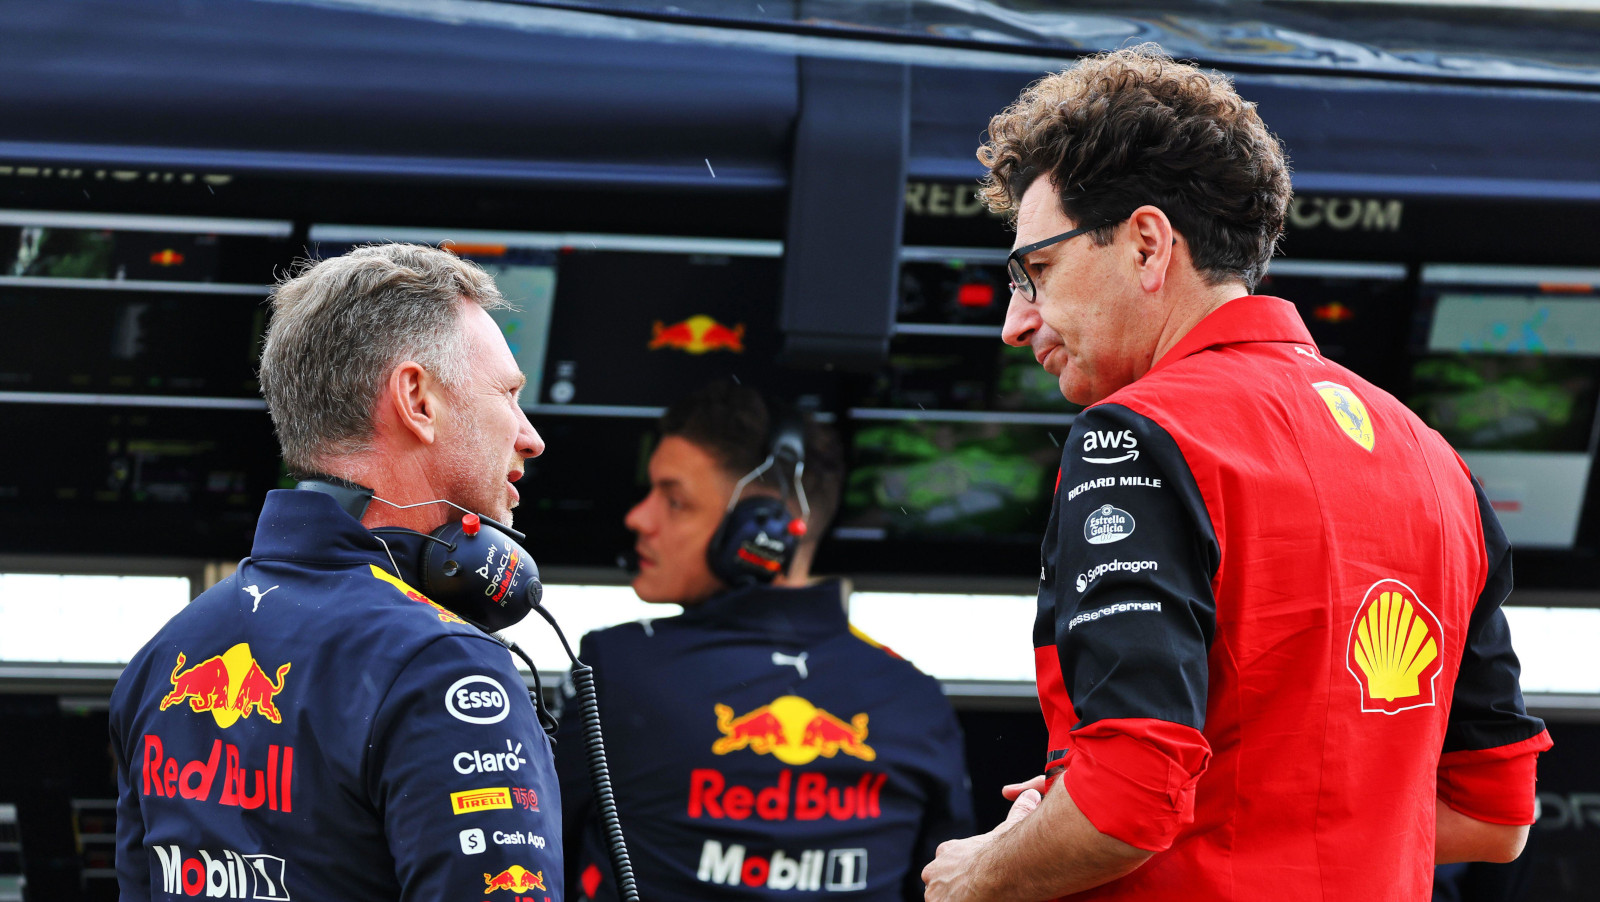 Christian Horner: The next Ferrari team boss will be under “great pressure”